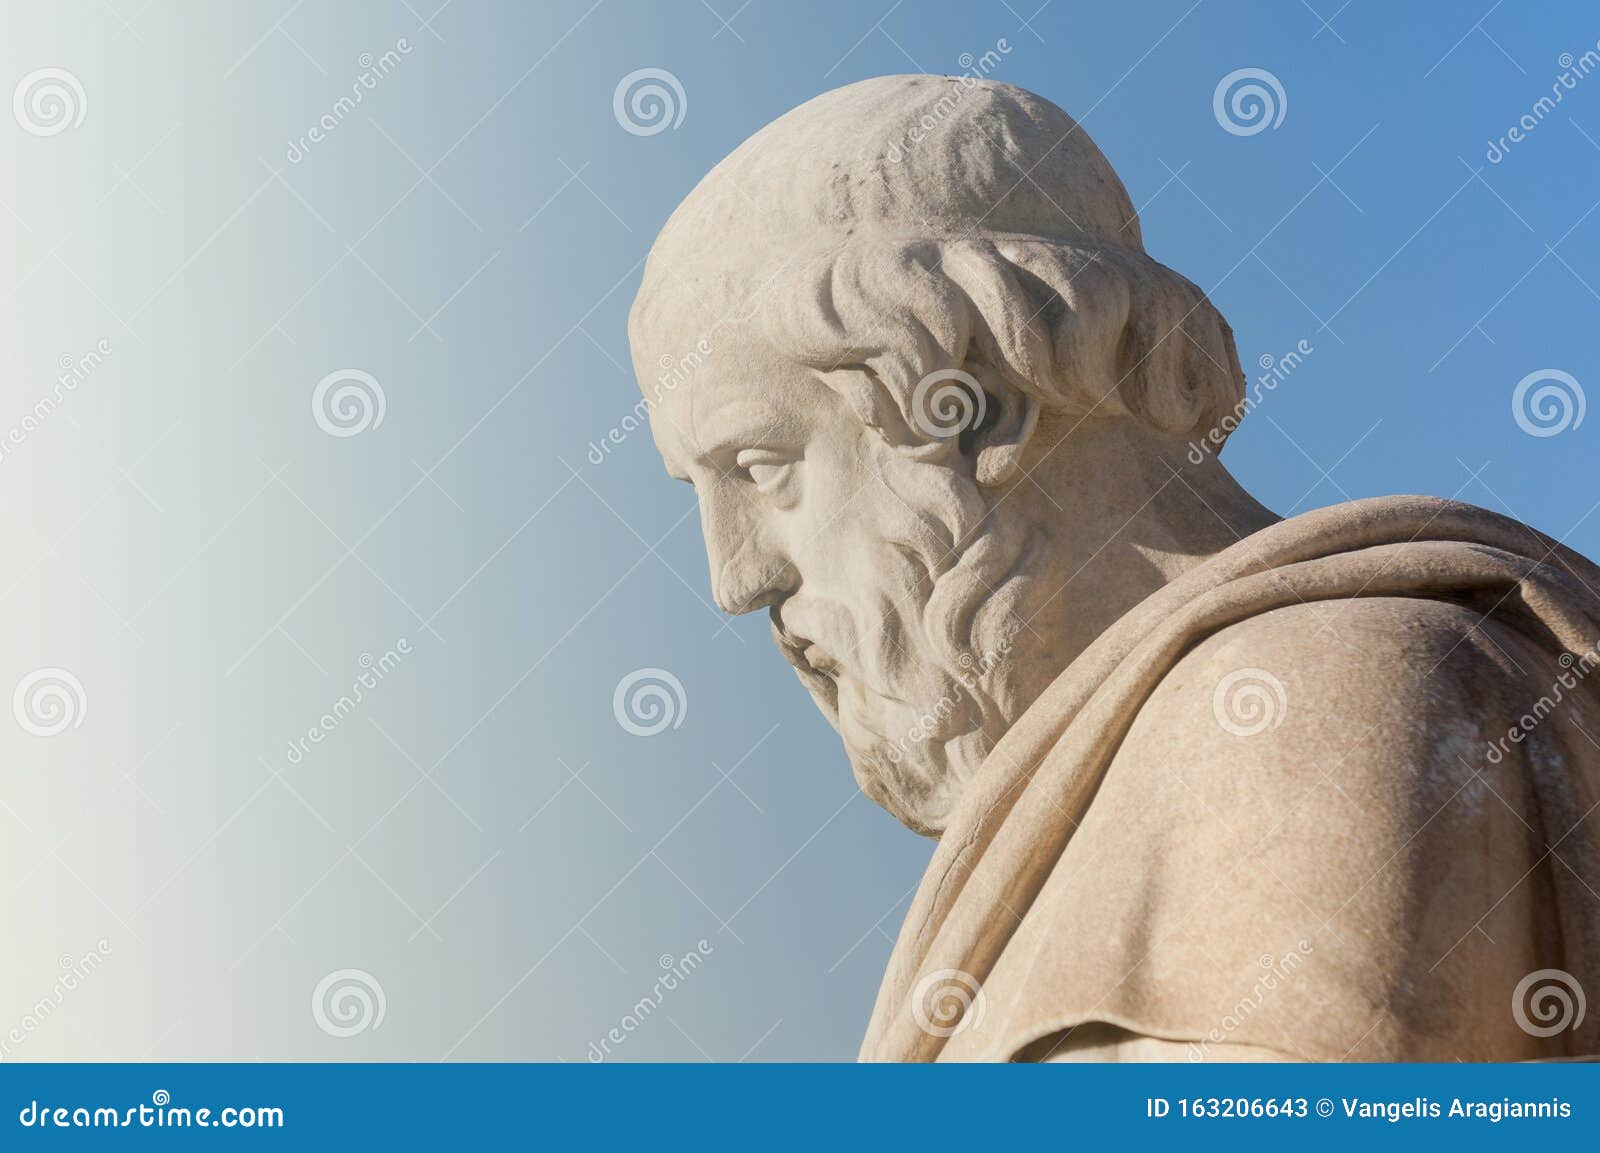 classic statue of philosopher plato